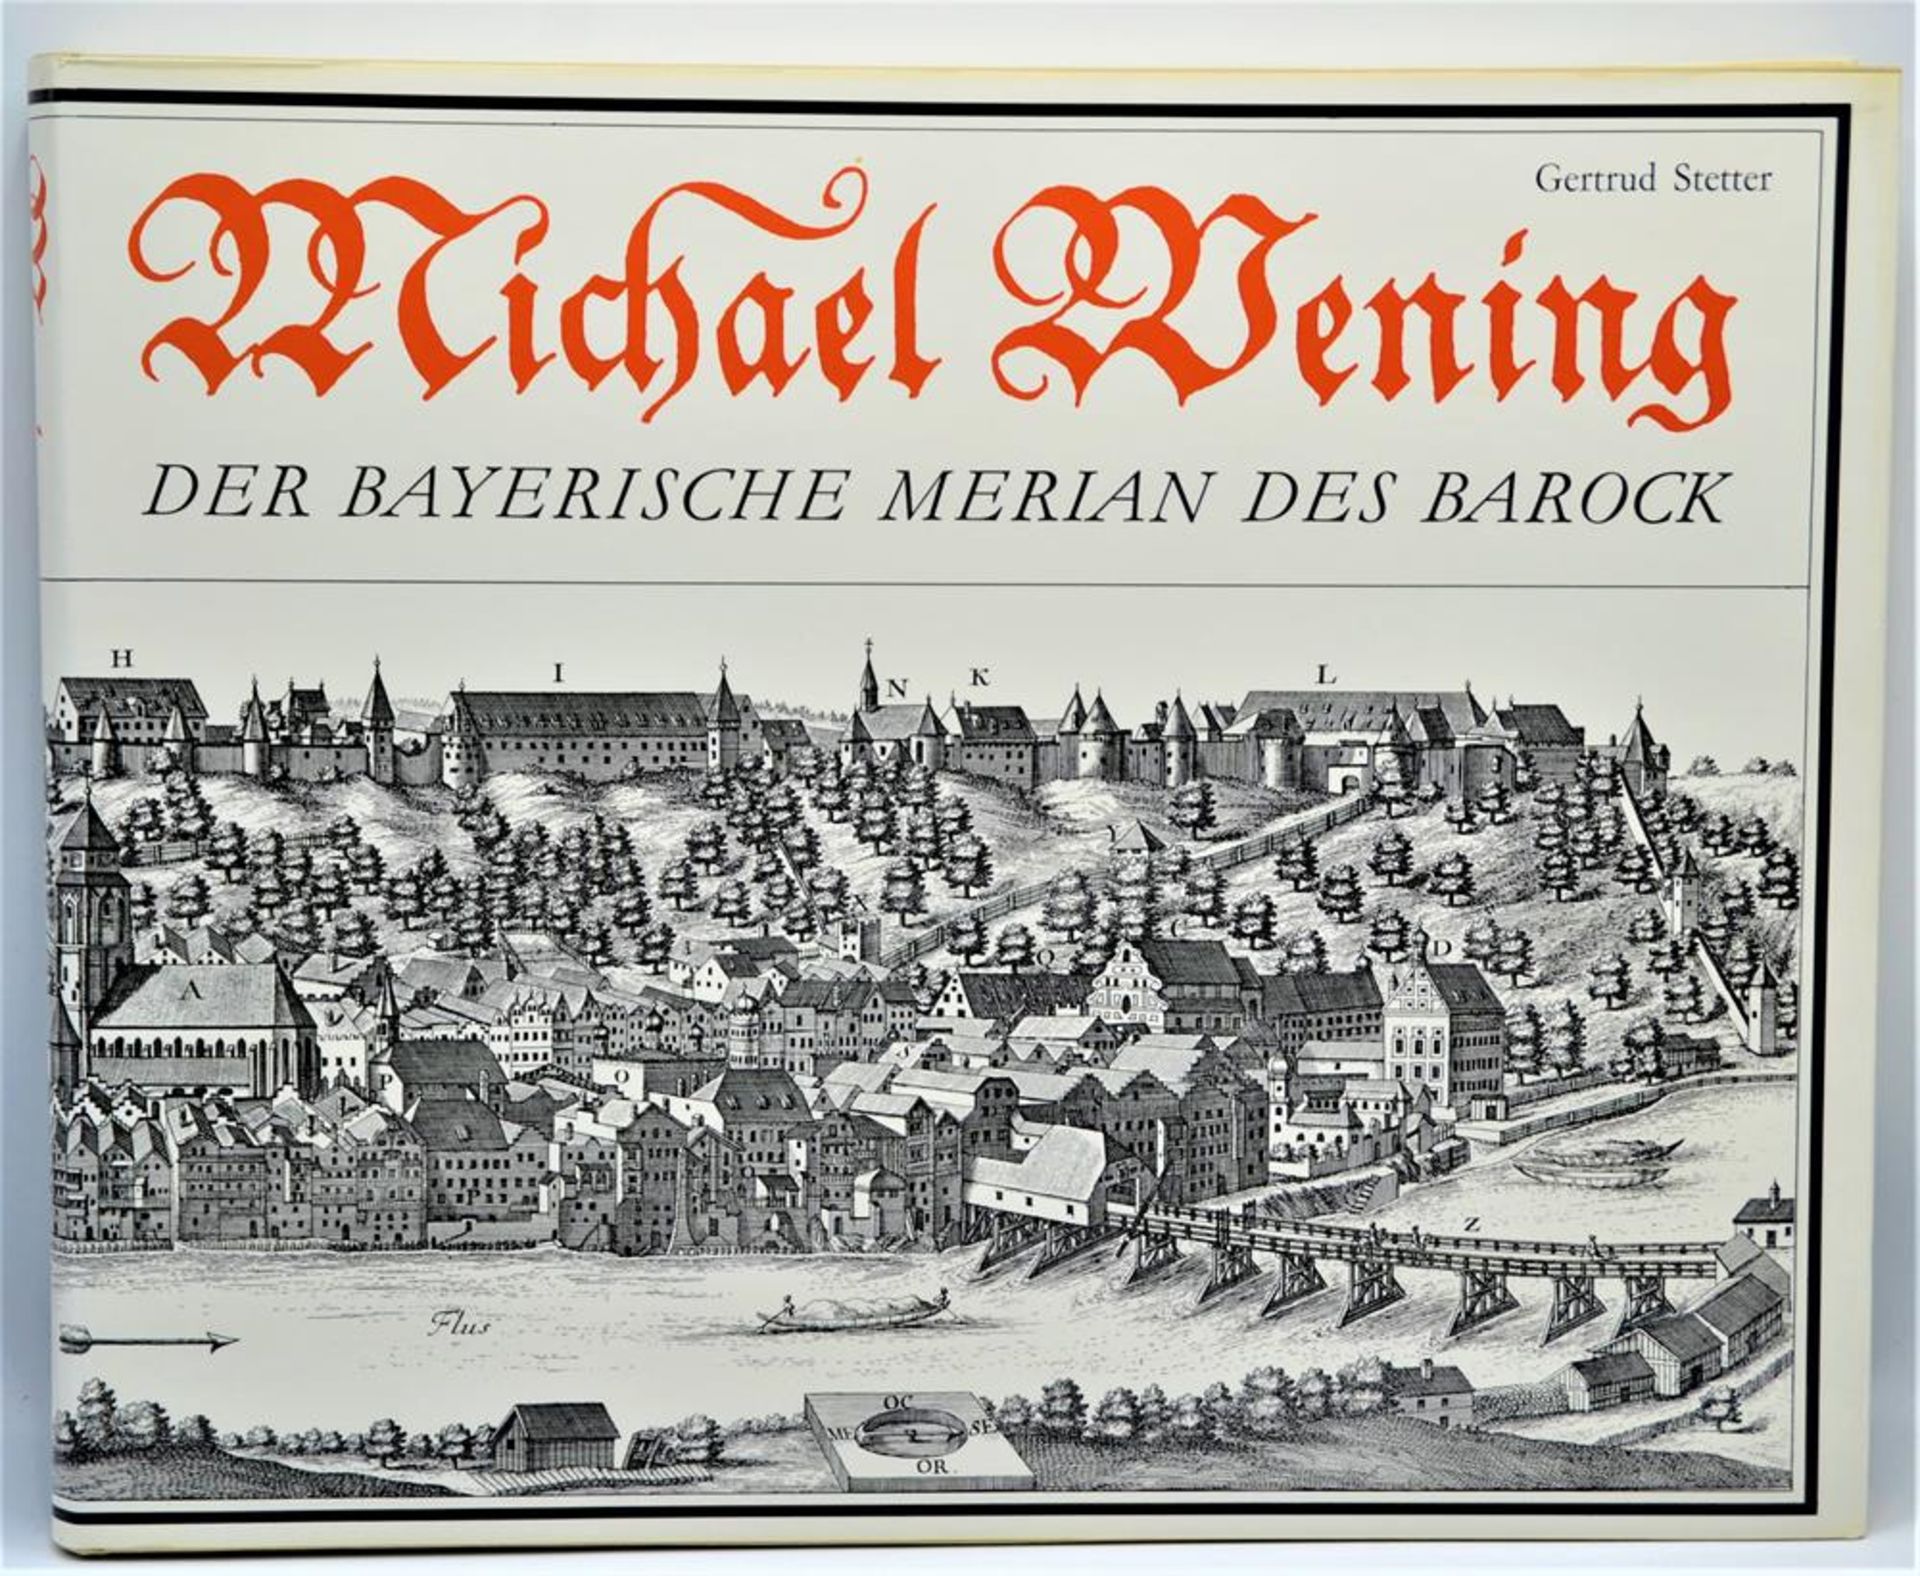 Buch Michael Wening, " Der bayerische Merian des Barock ", Gertrud Stetter, Süddeutscher Verlag